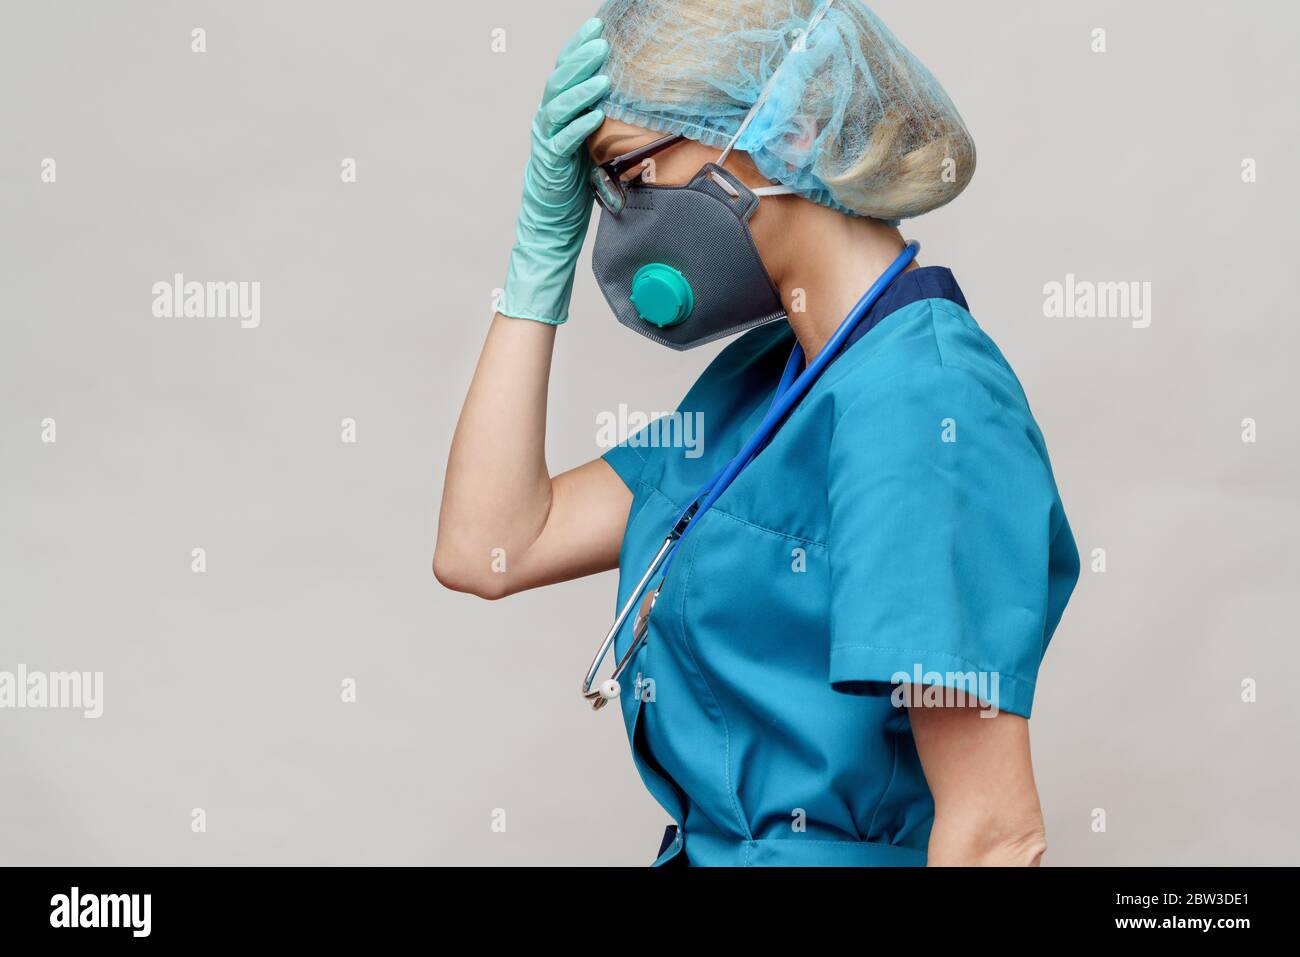 medico femminile con stetoscopio che indossa maschera protettiva e guanti in lattice su sfondo grigio chiaro Foto Stock